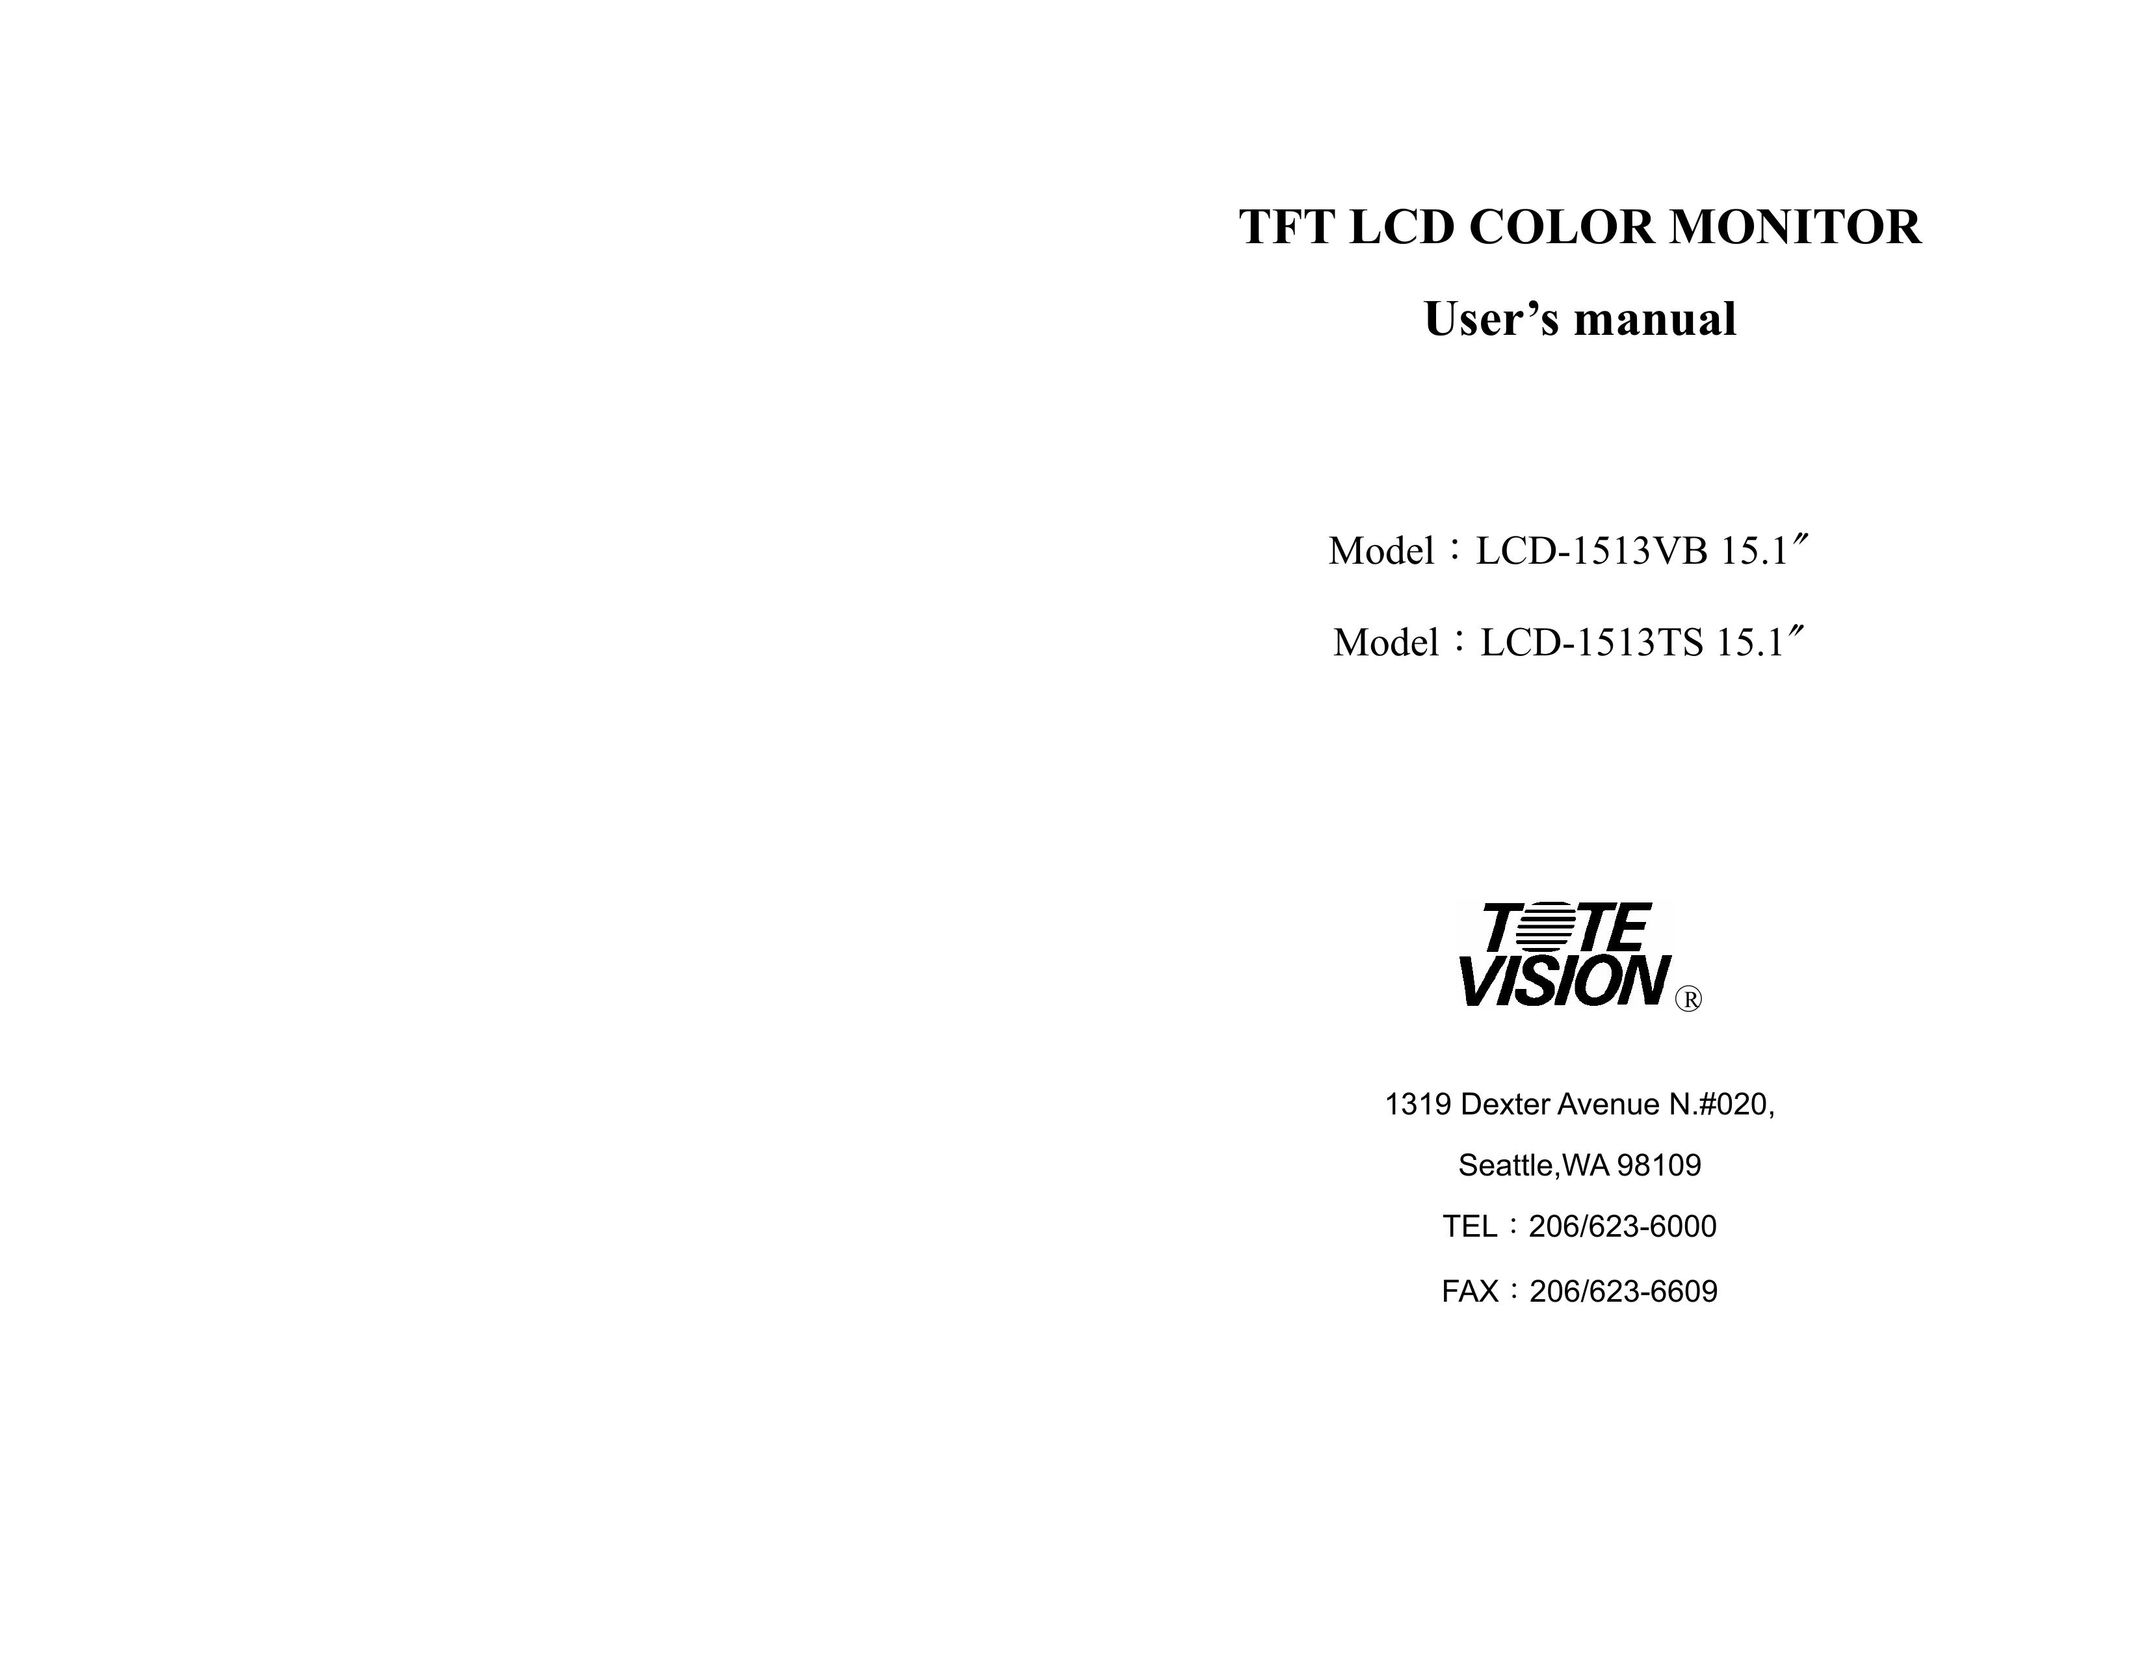 Tote Vision LCD-1513TS 15.1 Computer Monitor User Manual